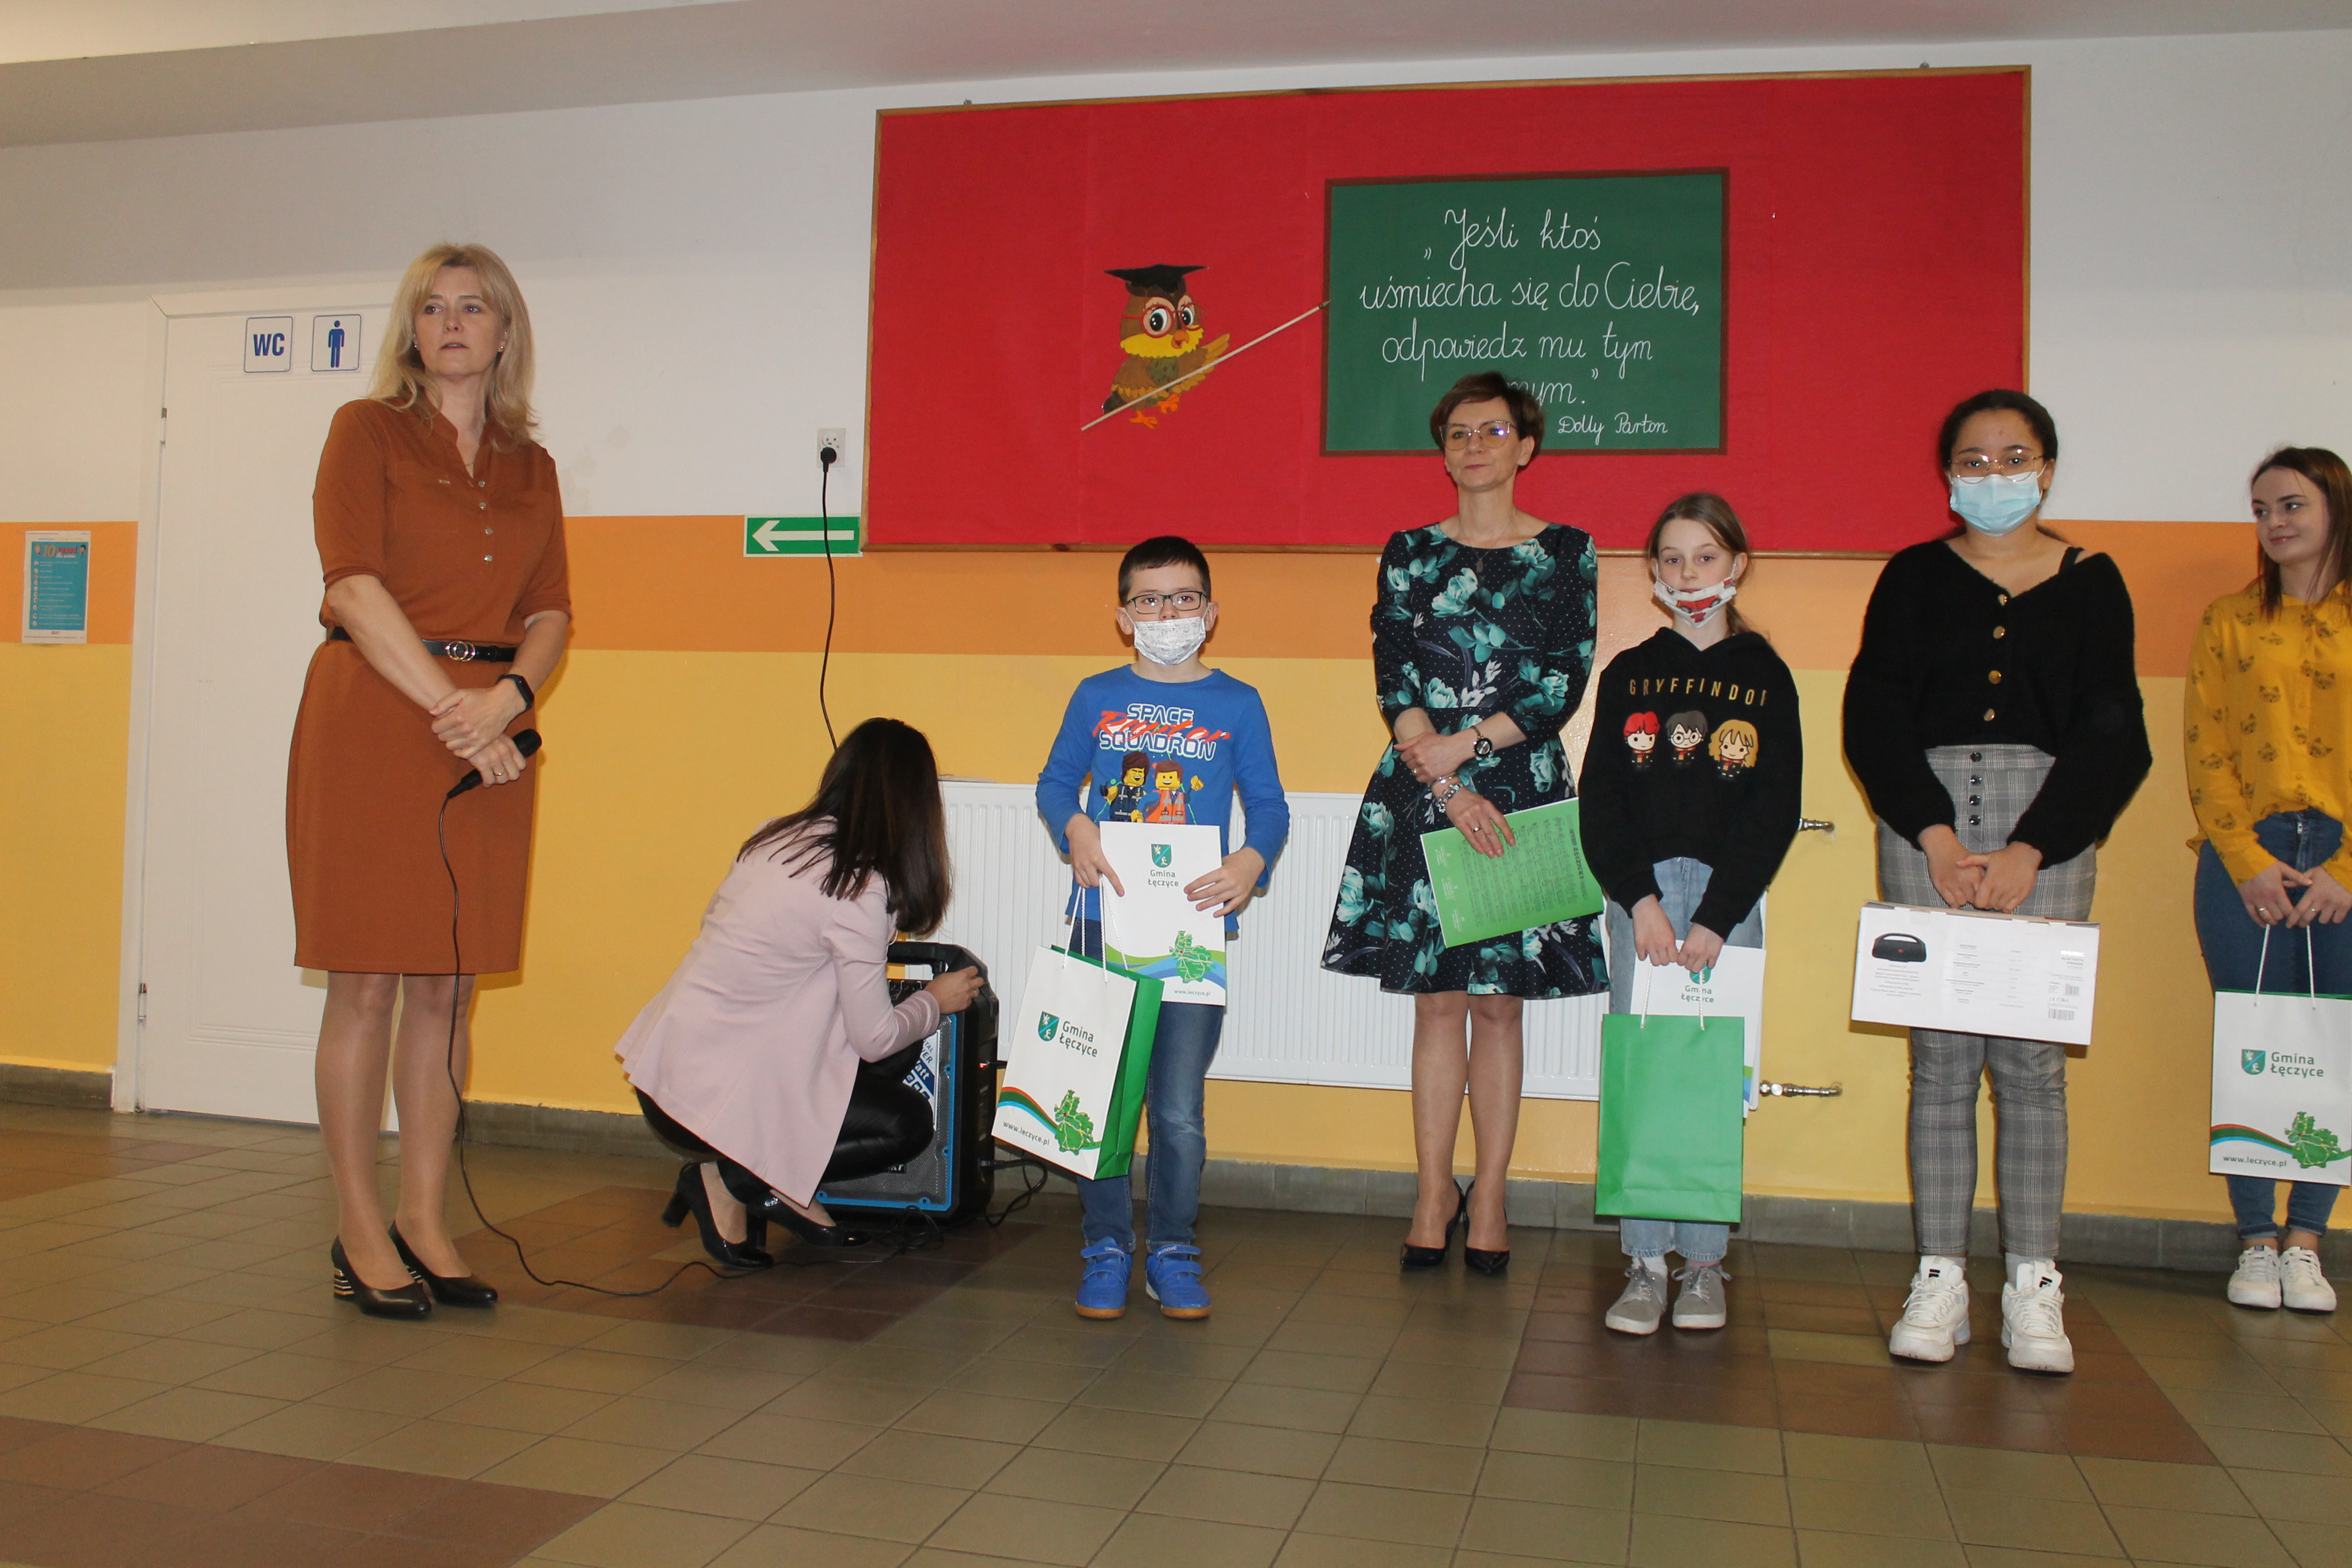 Zdjęcie przedstawiające dzieci oraz dorosłych na wręczeniu nagród w konkursie, w tle wisząca ilustracja sowy wskazującej na tekst: "Jeśli ktoś uśmiecha się do Ciebie, odpowiedź mu tym samym"